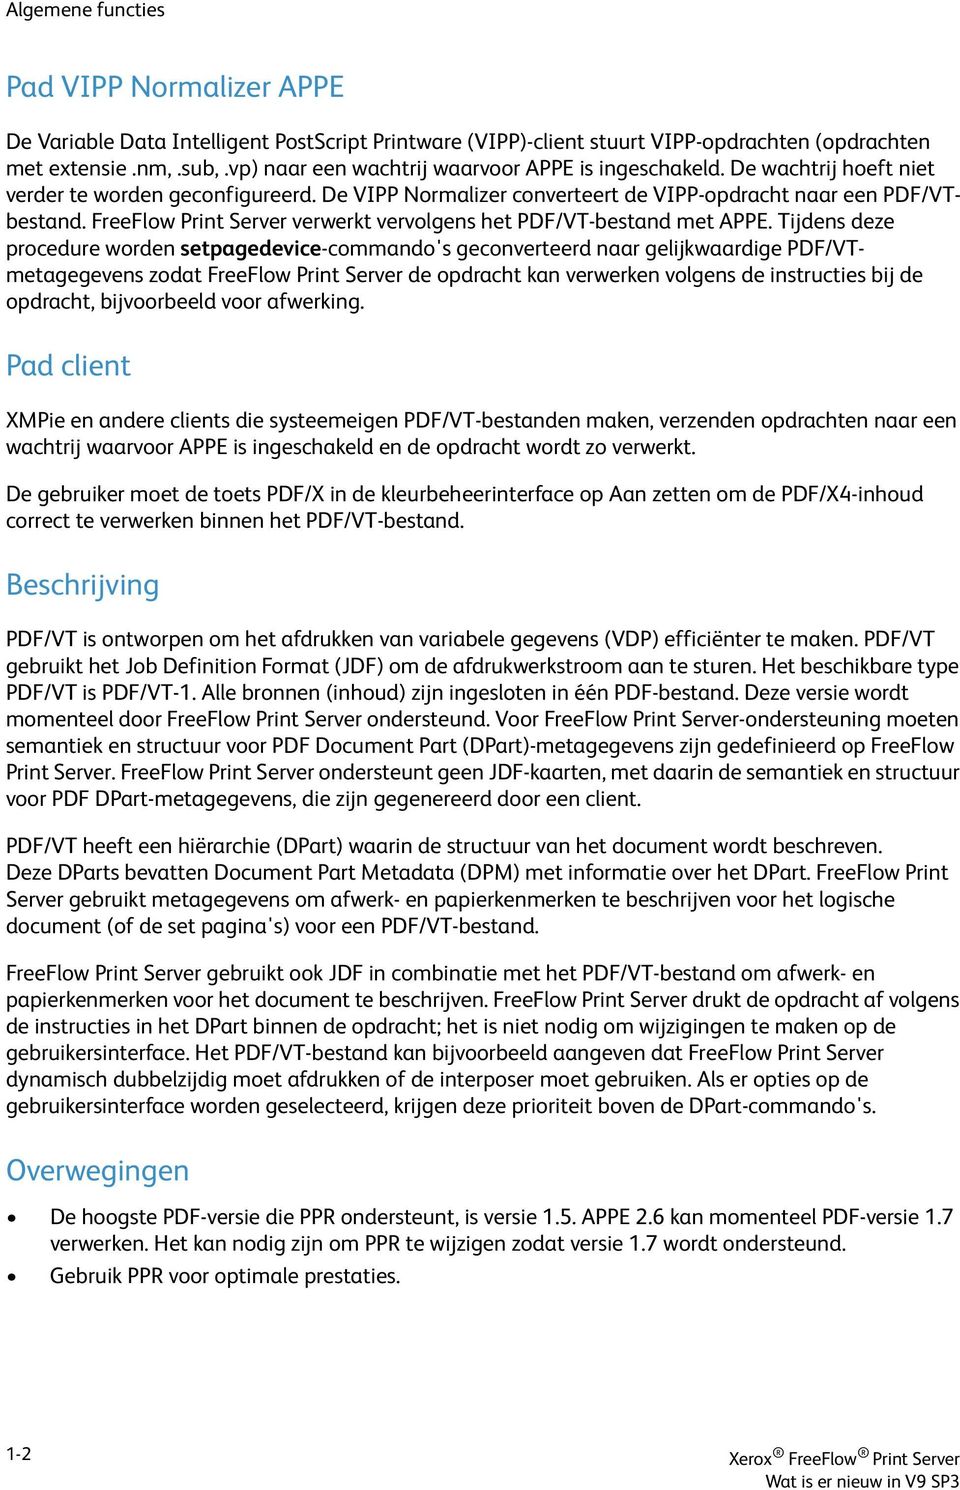 FreeFlow Print Server verwerkt vervolgens het PDF/VT-bestand met APPE.